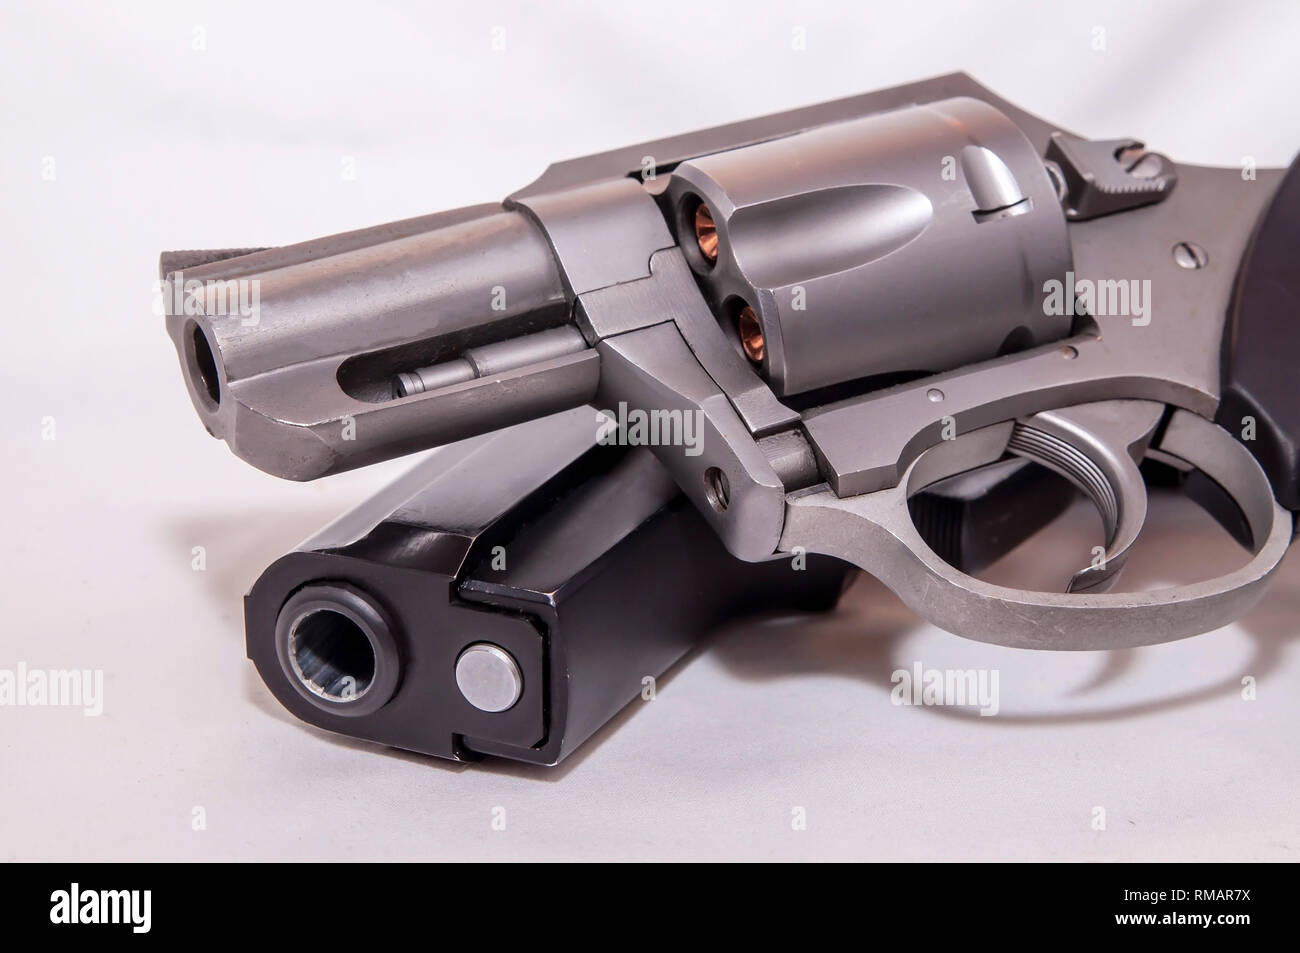 Zwei Pistolen, 40 Kaliber Pistole und einem 357 Magnum Revolver auf weißem Hintergrund Stockfoto